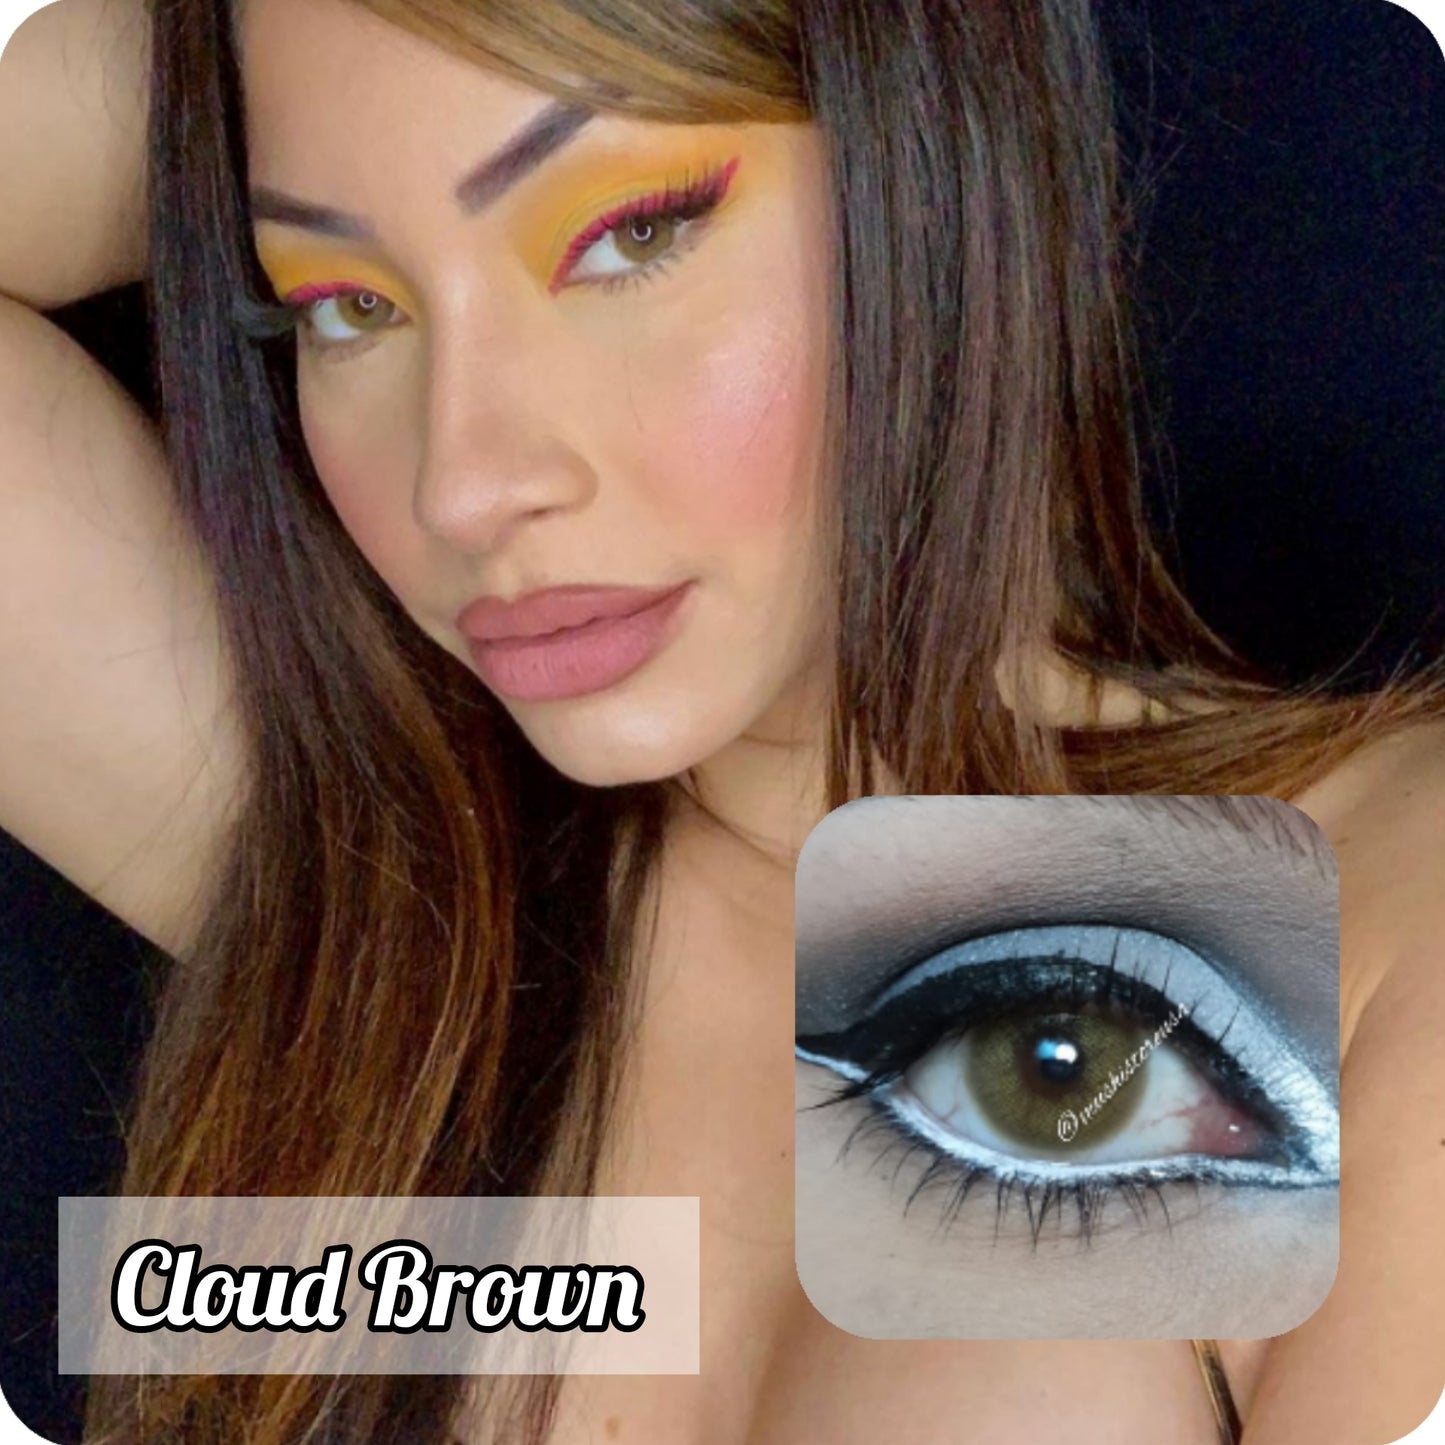 Cloud Brown